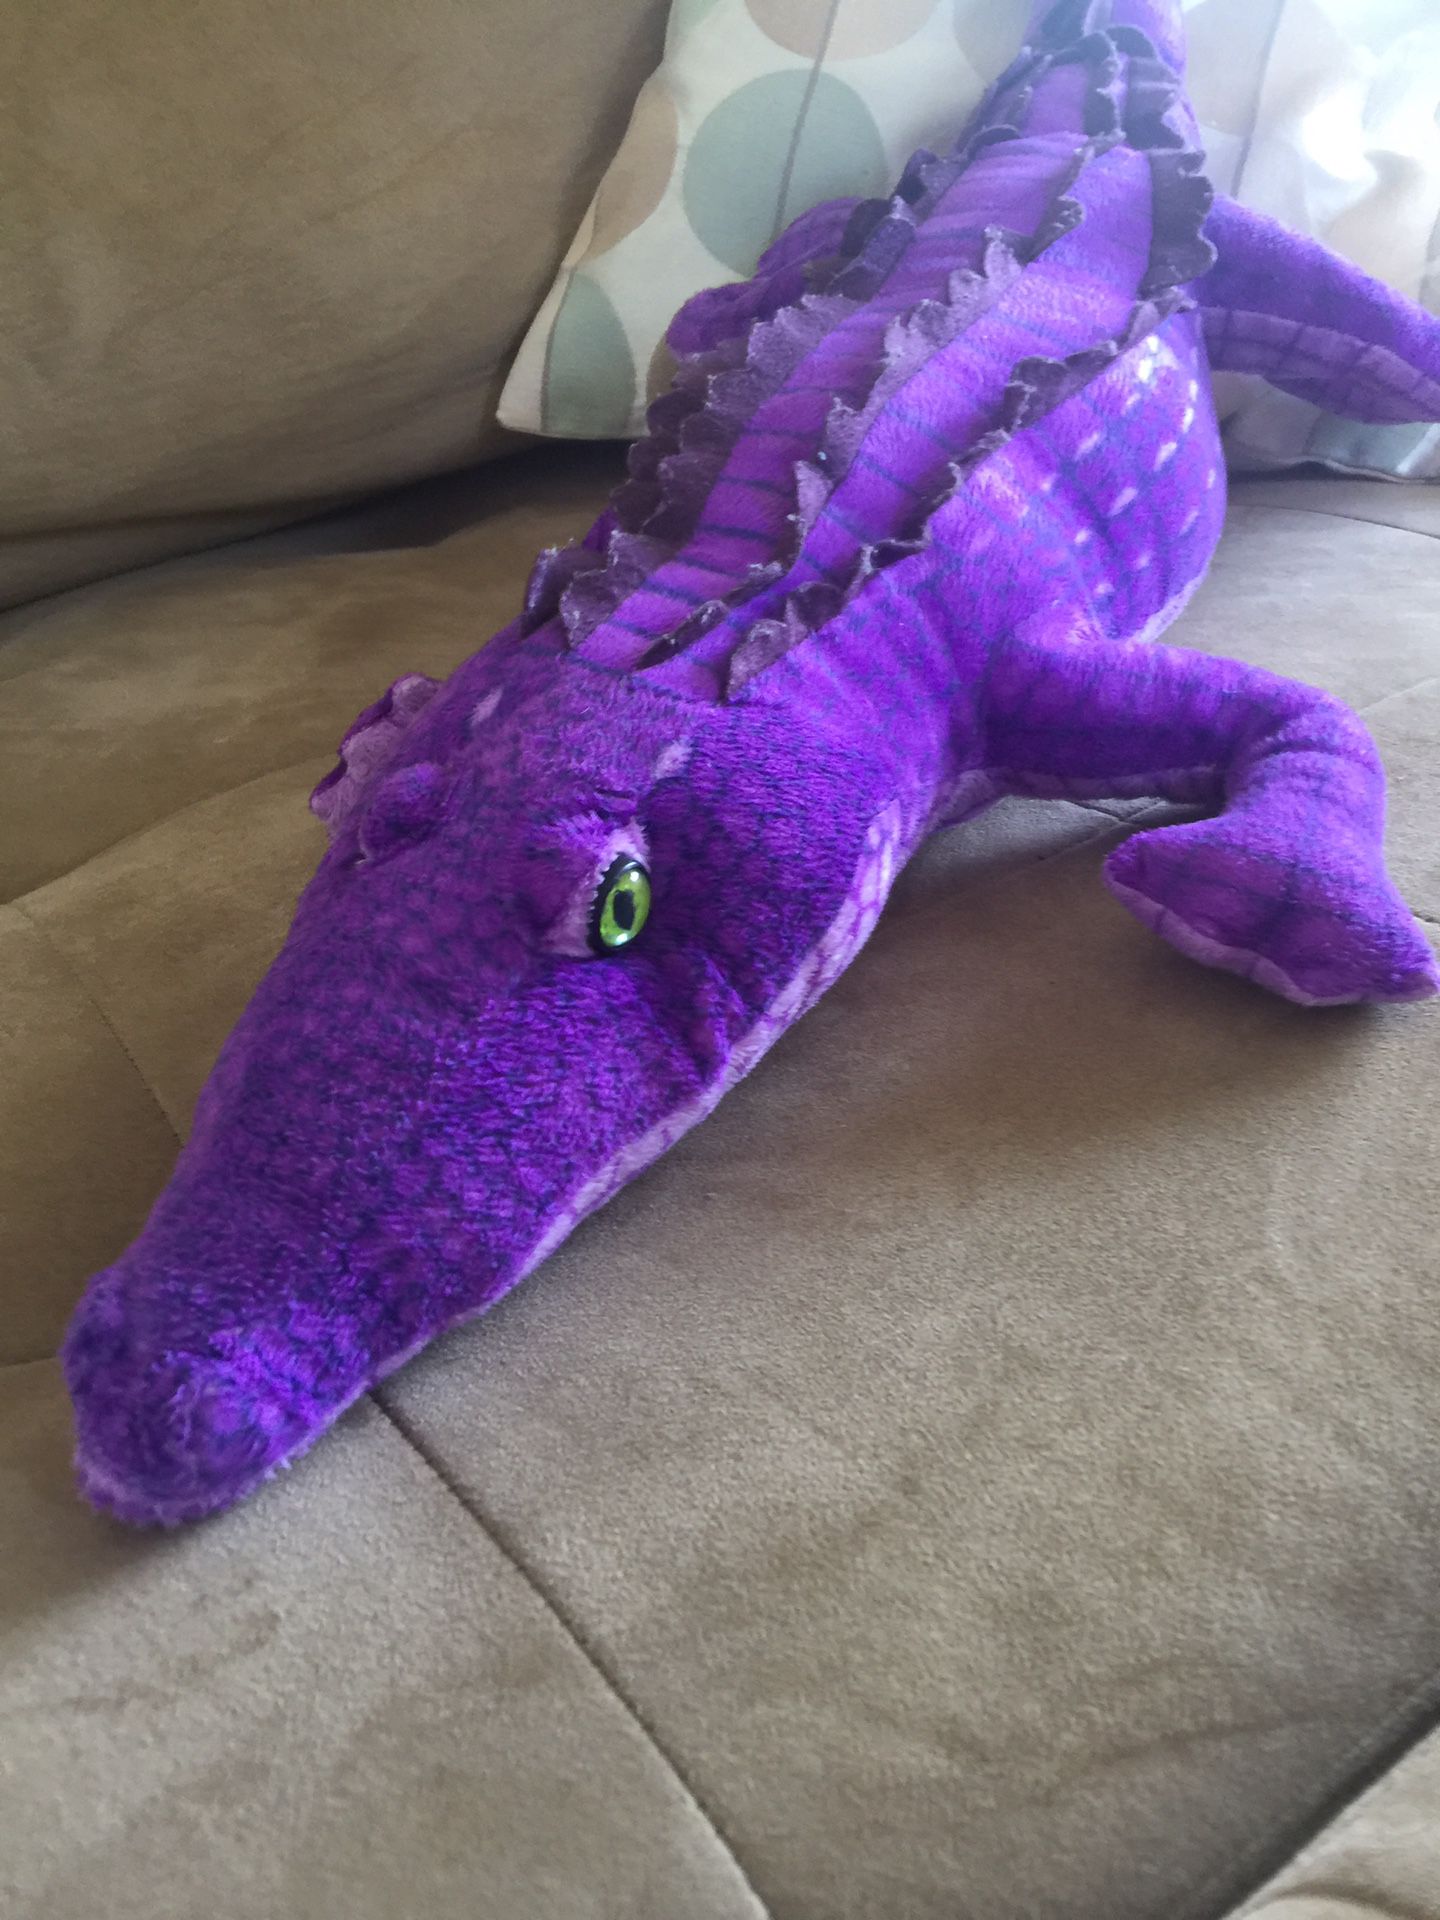 Purple alligator crocodile plush stuffed animal toy